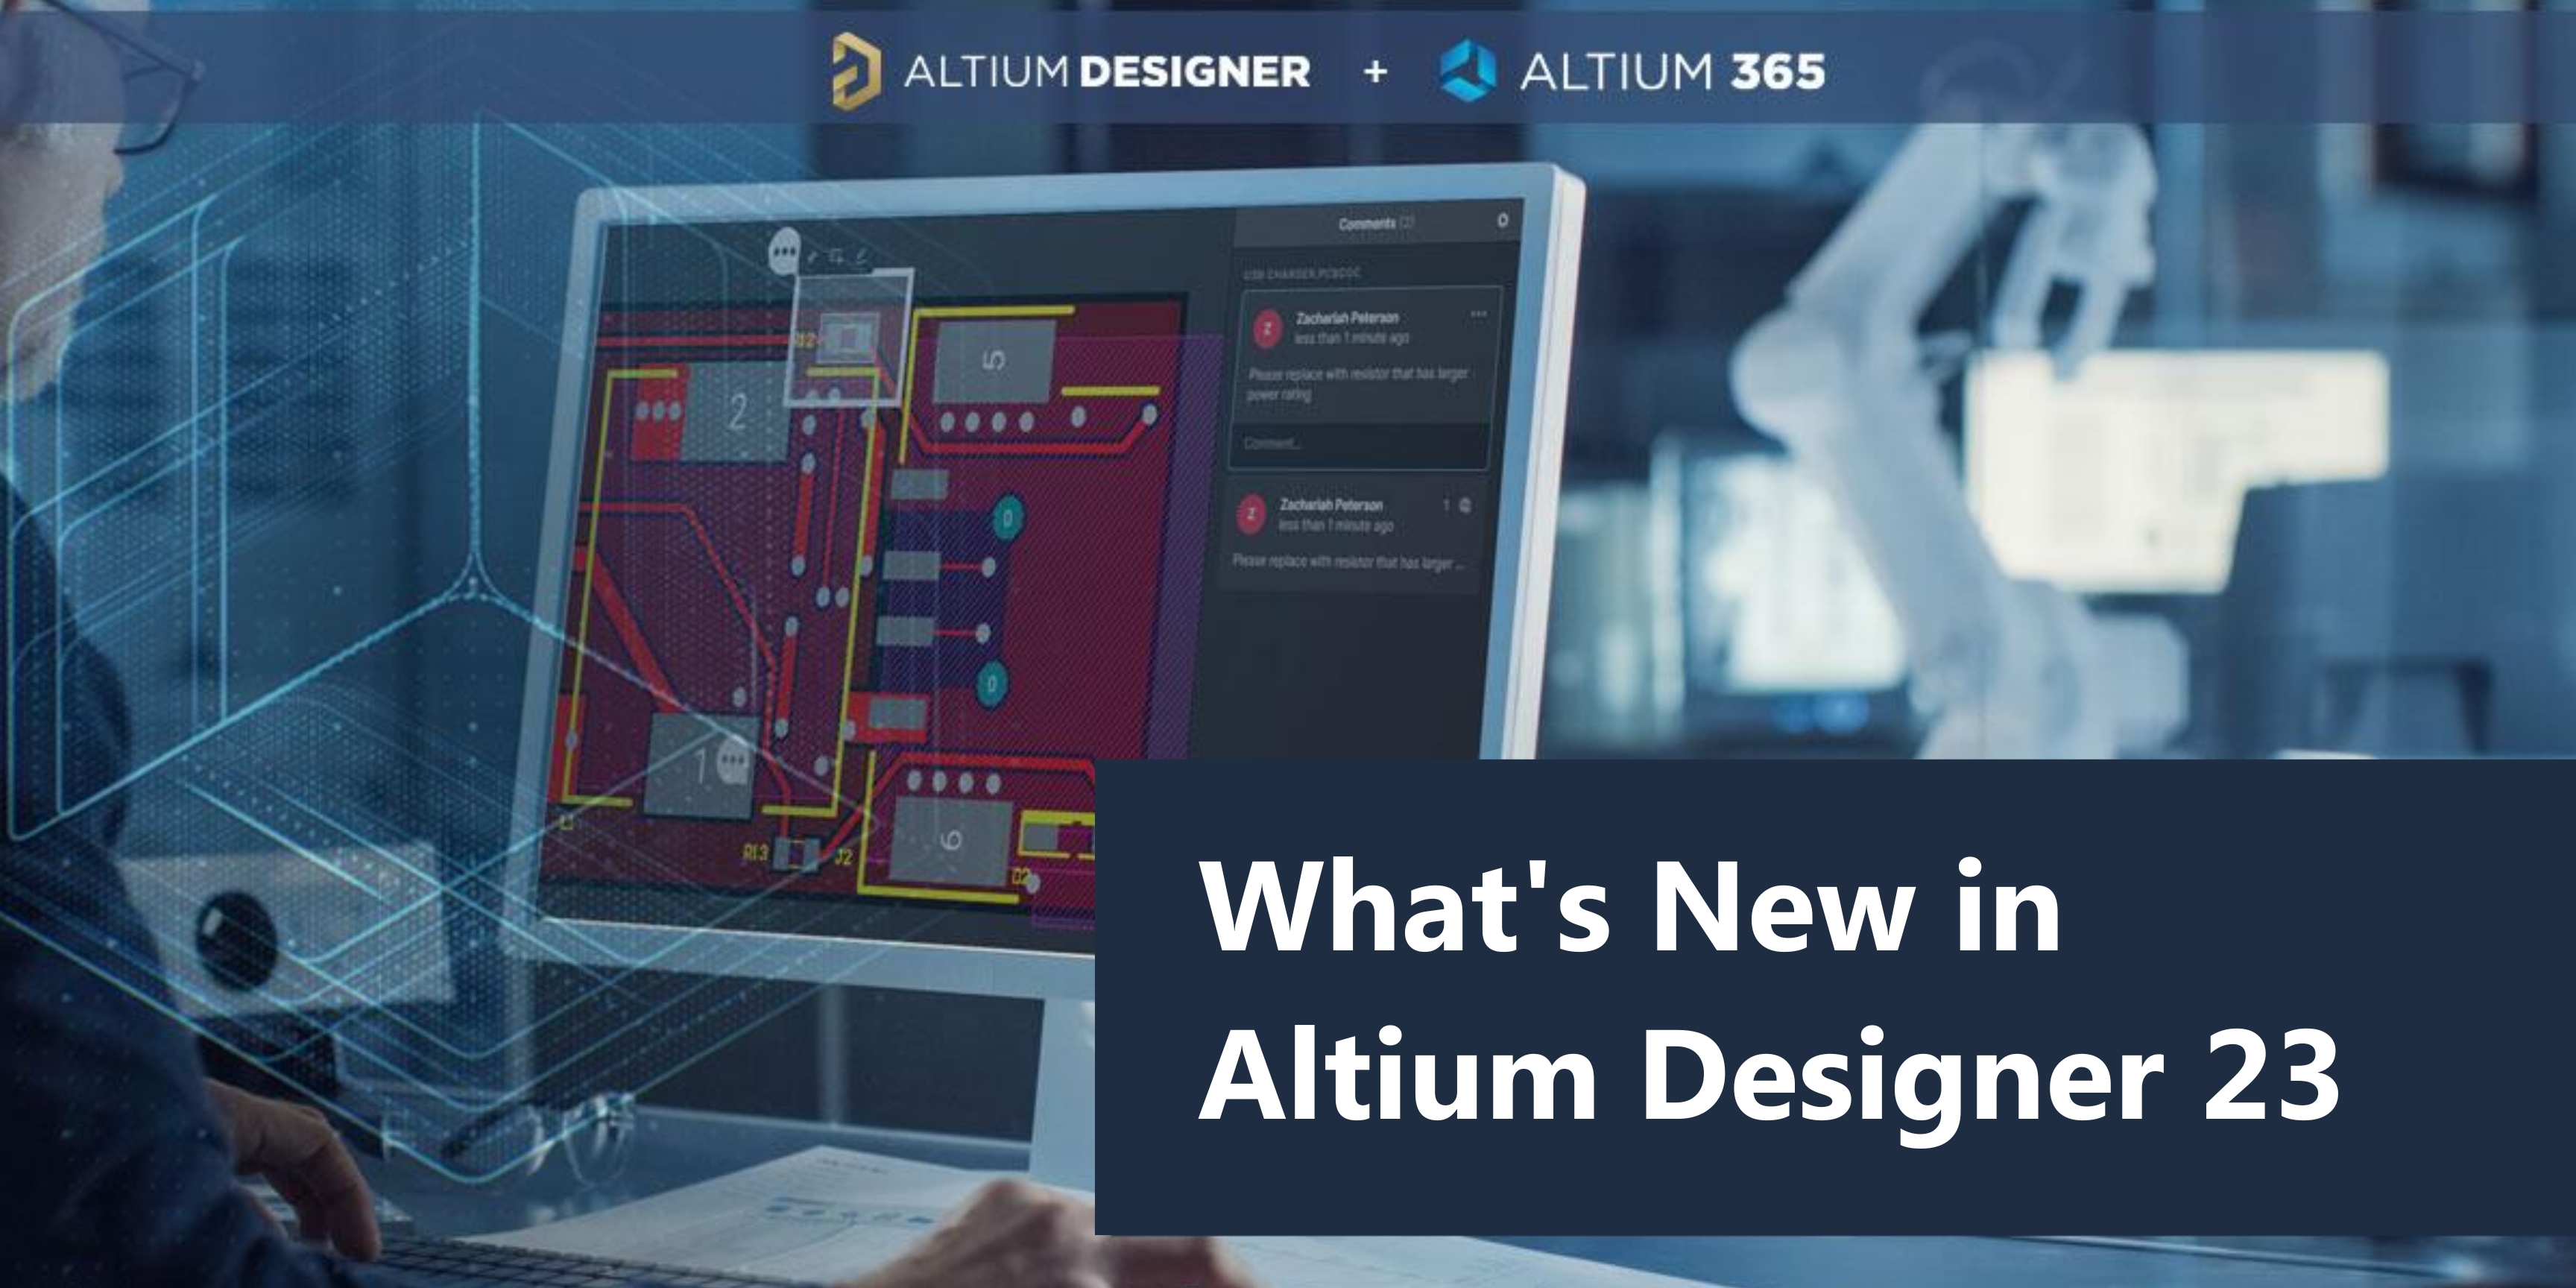 download the last version for android Altium Designer 23.11.1.41